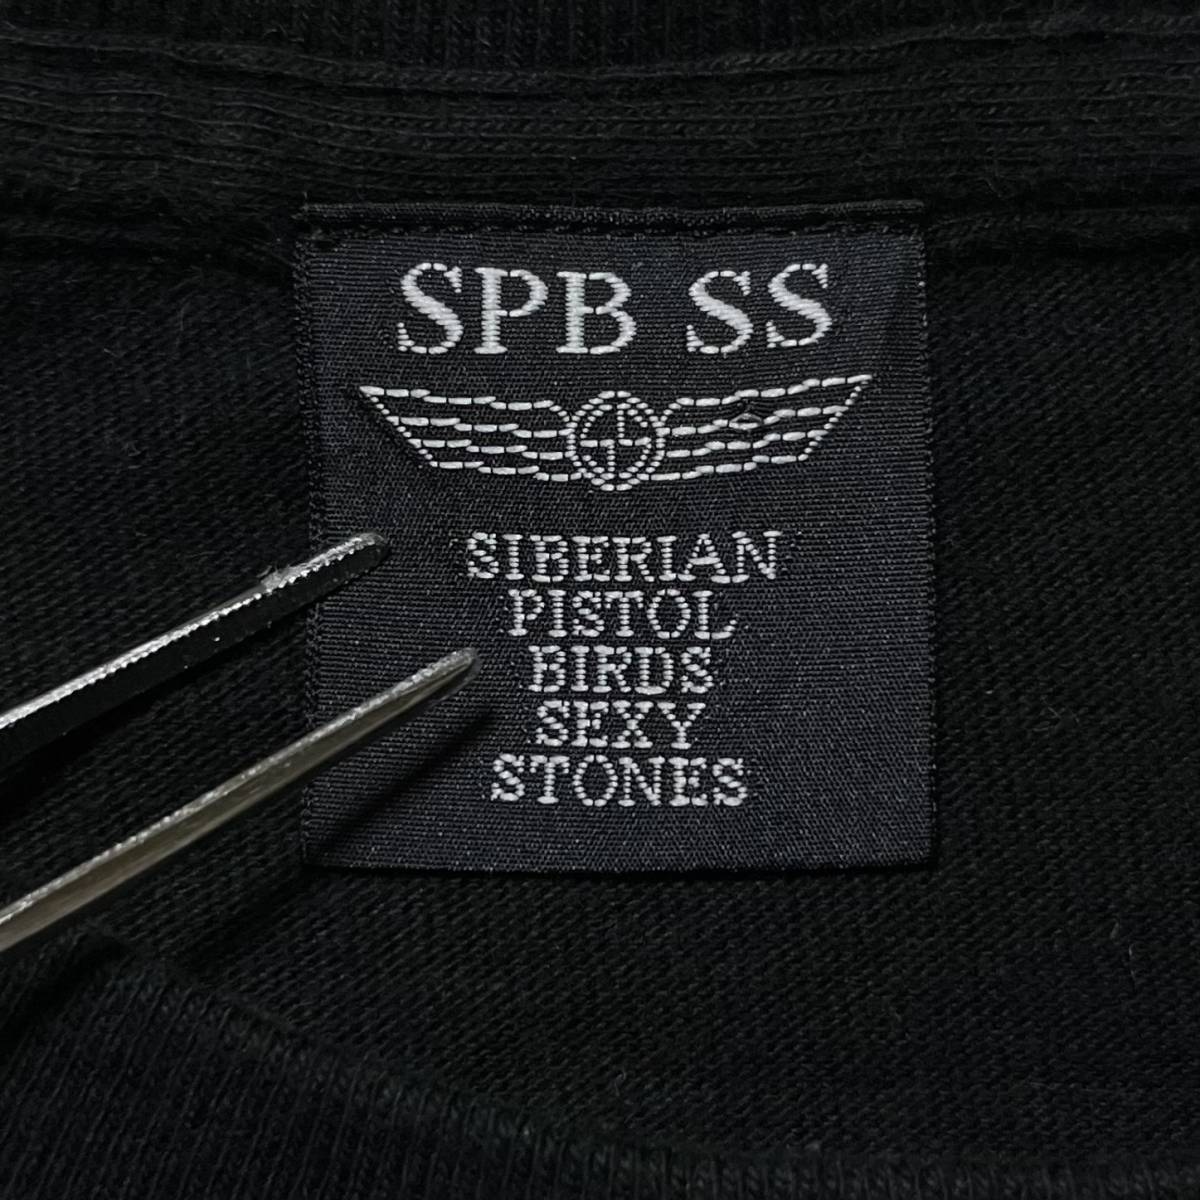 浅井健一 ベンジー SIBERIAN PISTOL BIRDS SEXY STONES / SPB SS スカル Tシャツ 黒 S 美品 管理B1389